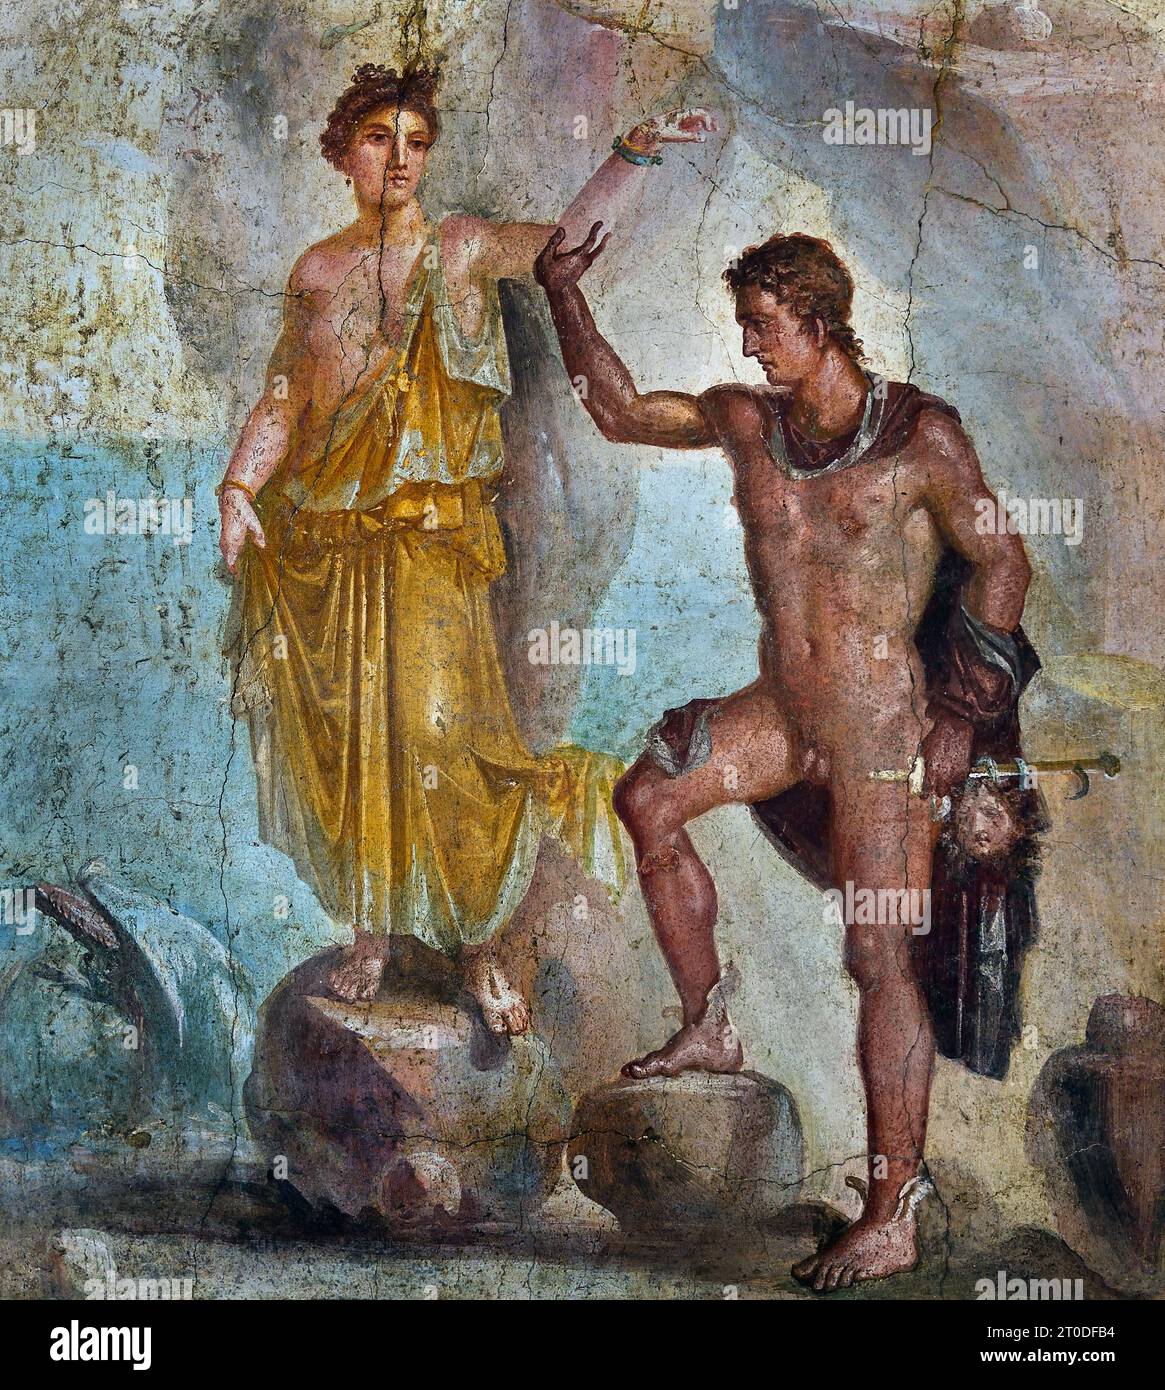 Perseo che libera Andromeda, la città romana di fresco Pompei si trova vicino a Napoli, nella regione Campania. Pompei fu sepolta sotto 4-6 m di cenere vulcanica e pomice nell'eruzione del Vesuvio nel 79 d.C. Italia Foto Stock